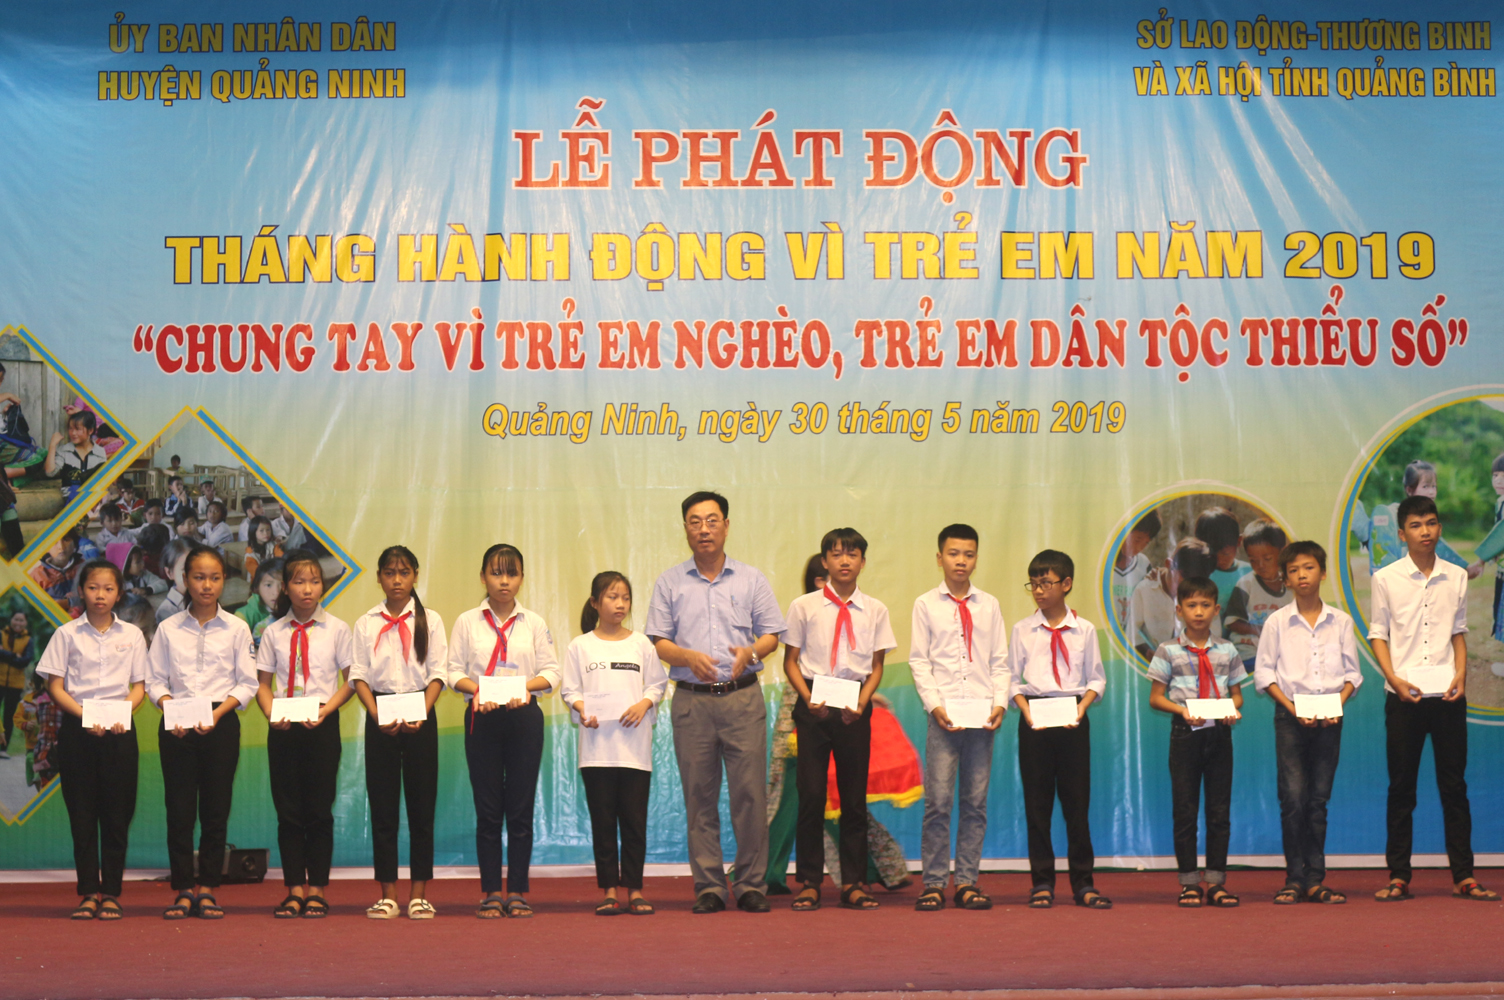 Đại diện lãnh đạo huyện Quảng Ninh trao thưởng cho các học sinh giỏi có hoàn cảnh khó khăn.